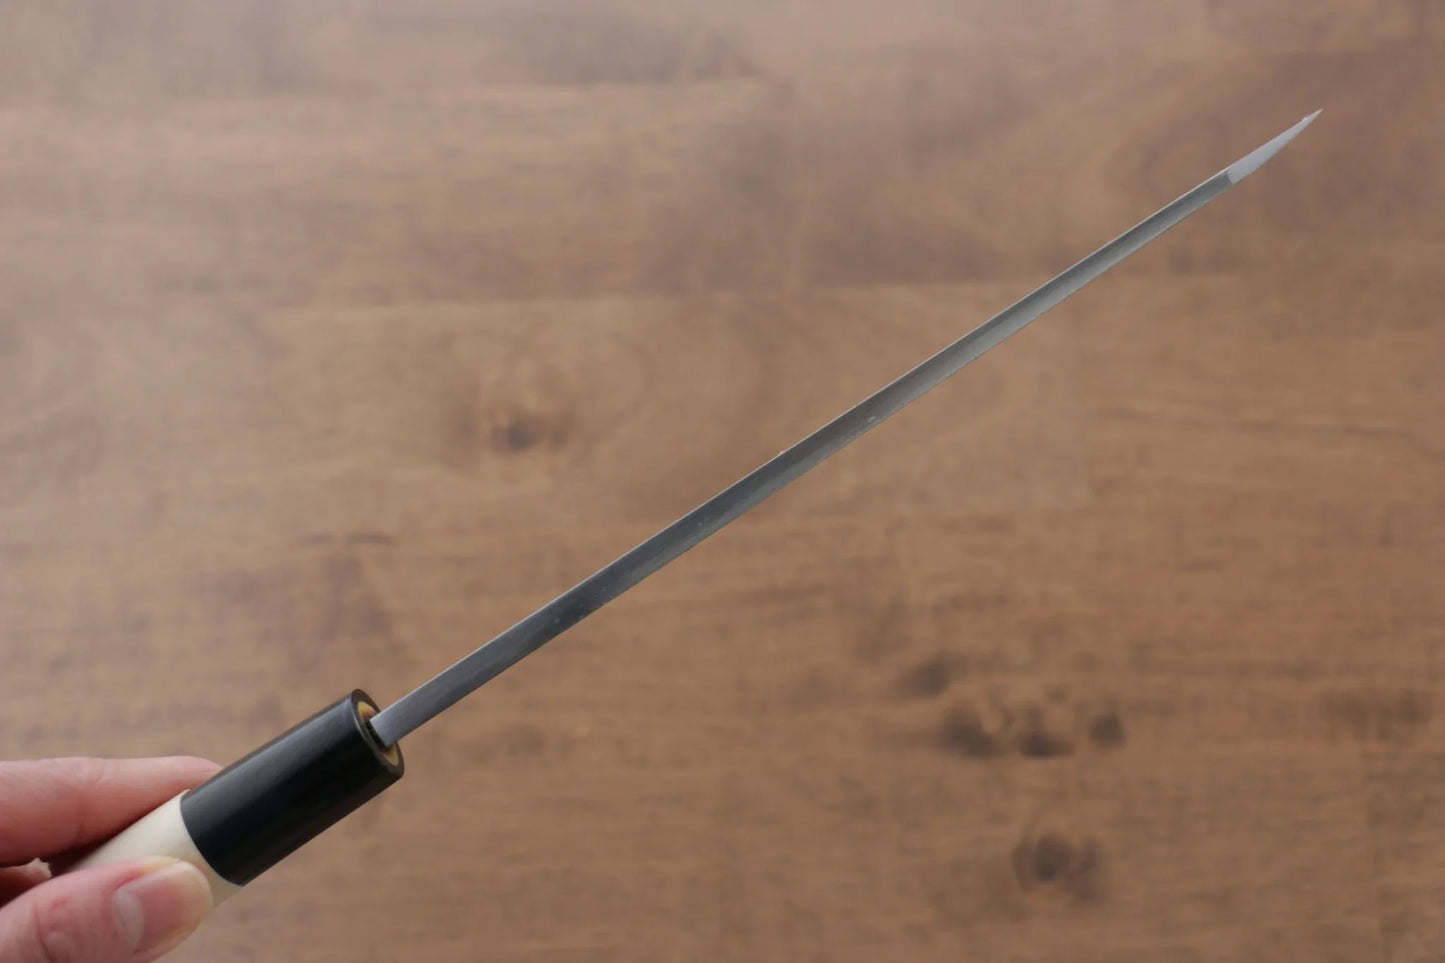 Marke Sakai Takayuki Premium Tokujou Weißer Stahl Nr. 2 Spezielles Ausbeinmesser Garasuki Japanisches Messer 180 mm Griff aus Magnolienholz